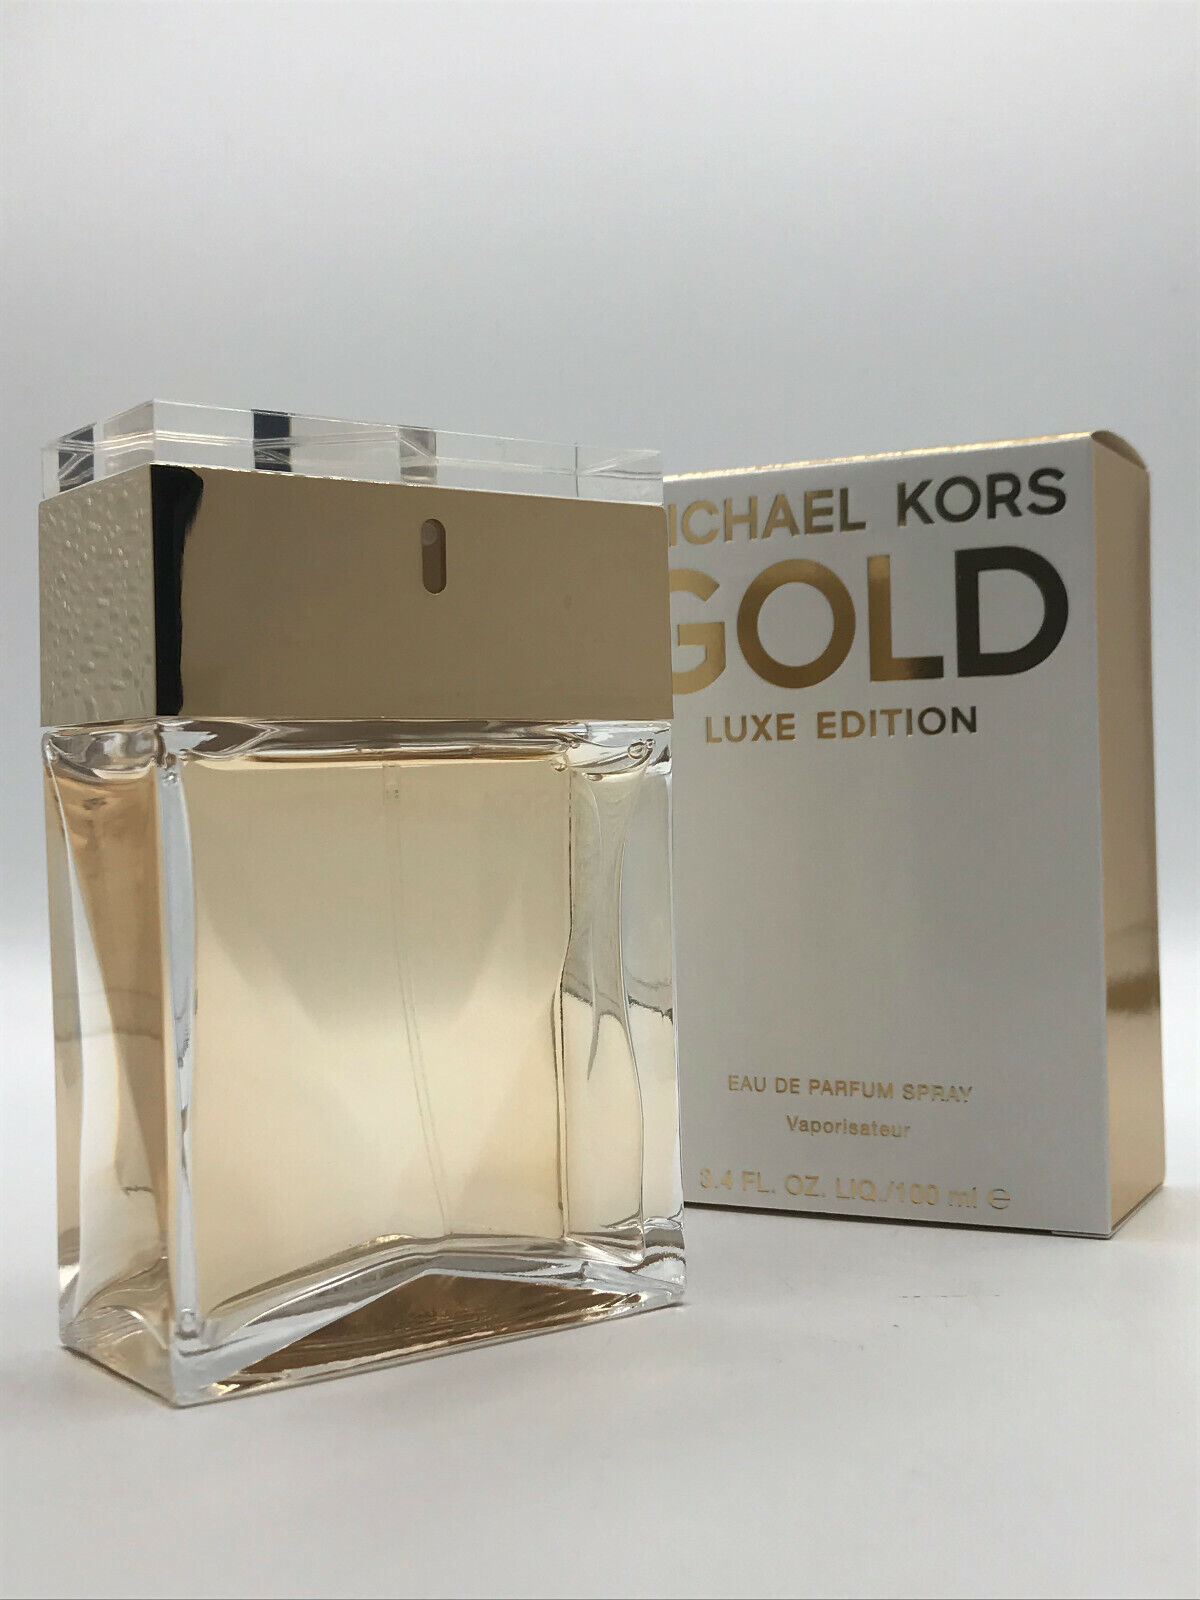 Michael kors gold luxe 3.4 oz eau de parfum spray